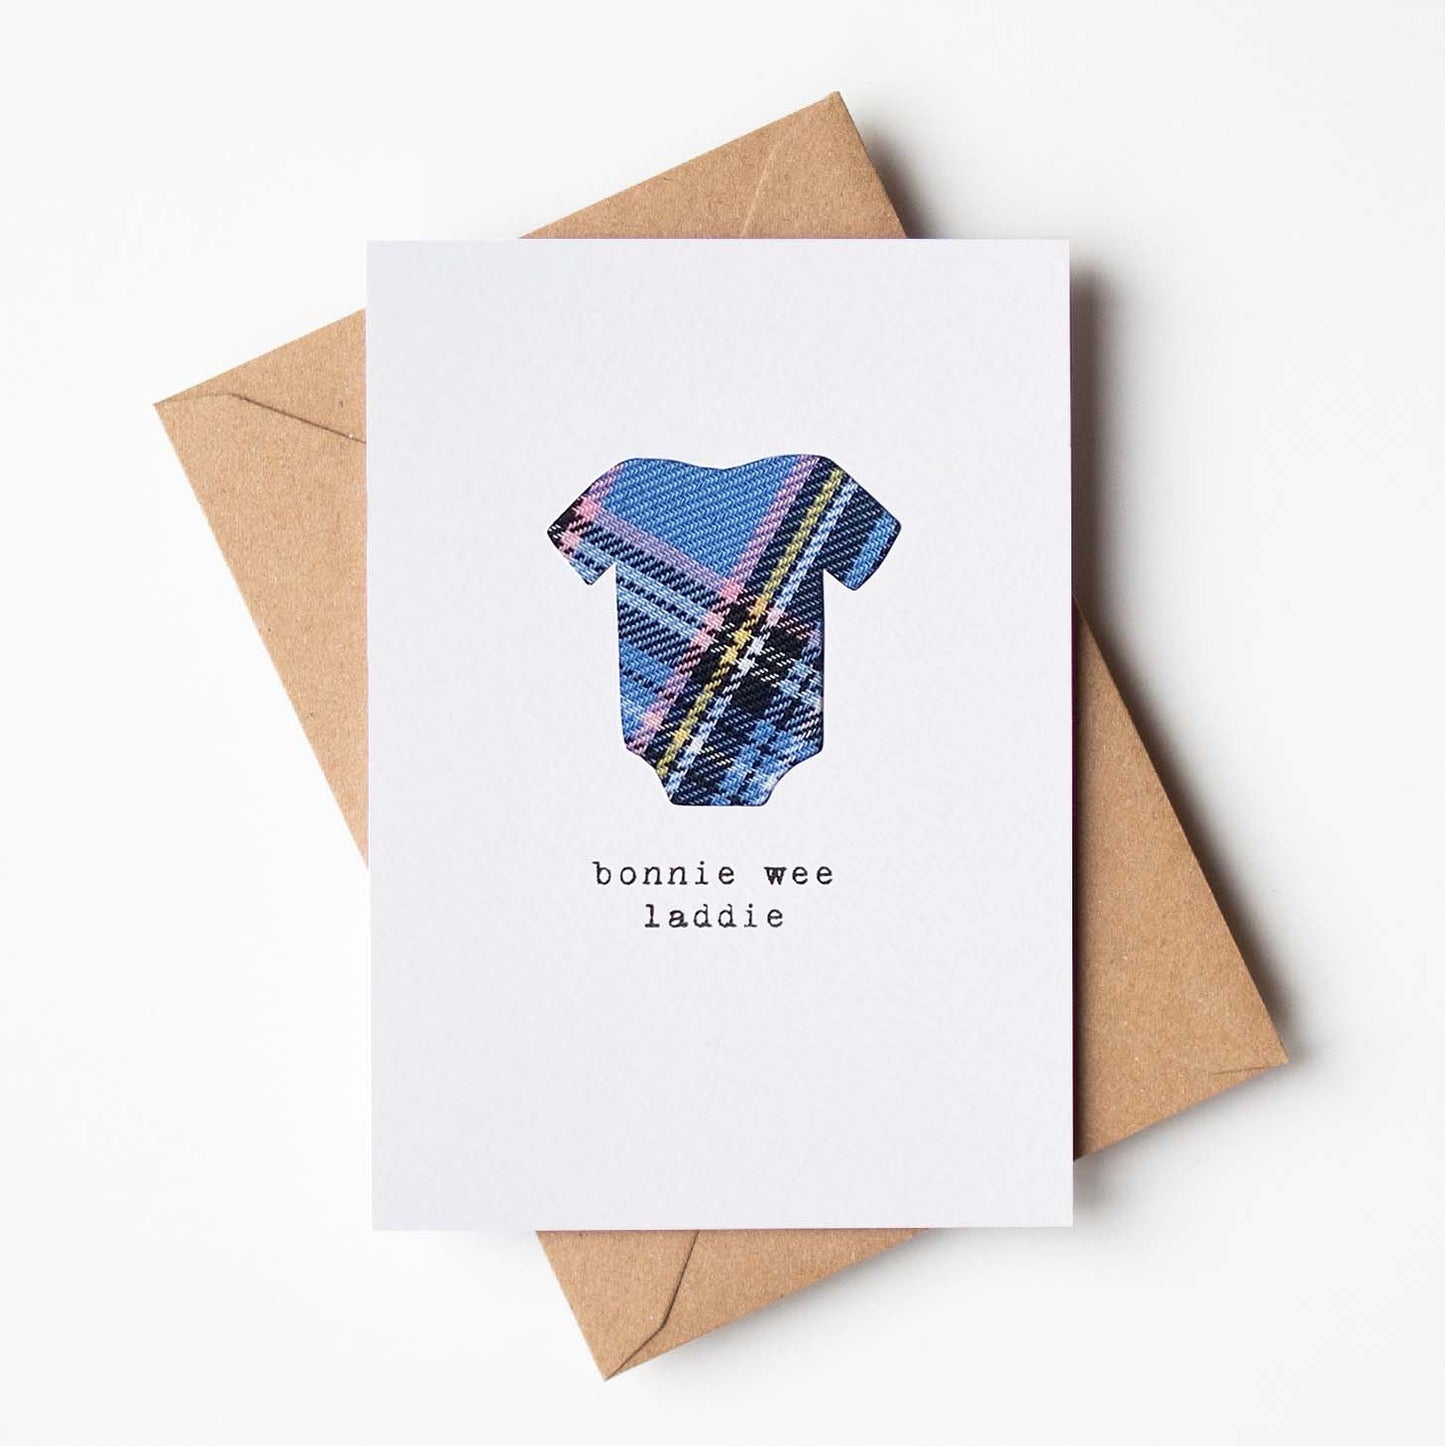 'Bonnie Wee Laddie' Scottish Baby Card with Tartan - HiyaPal